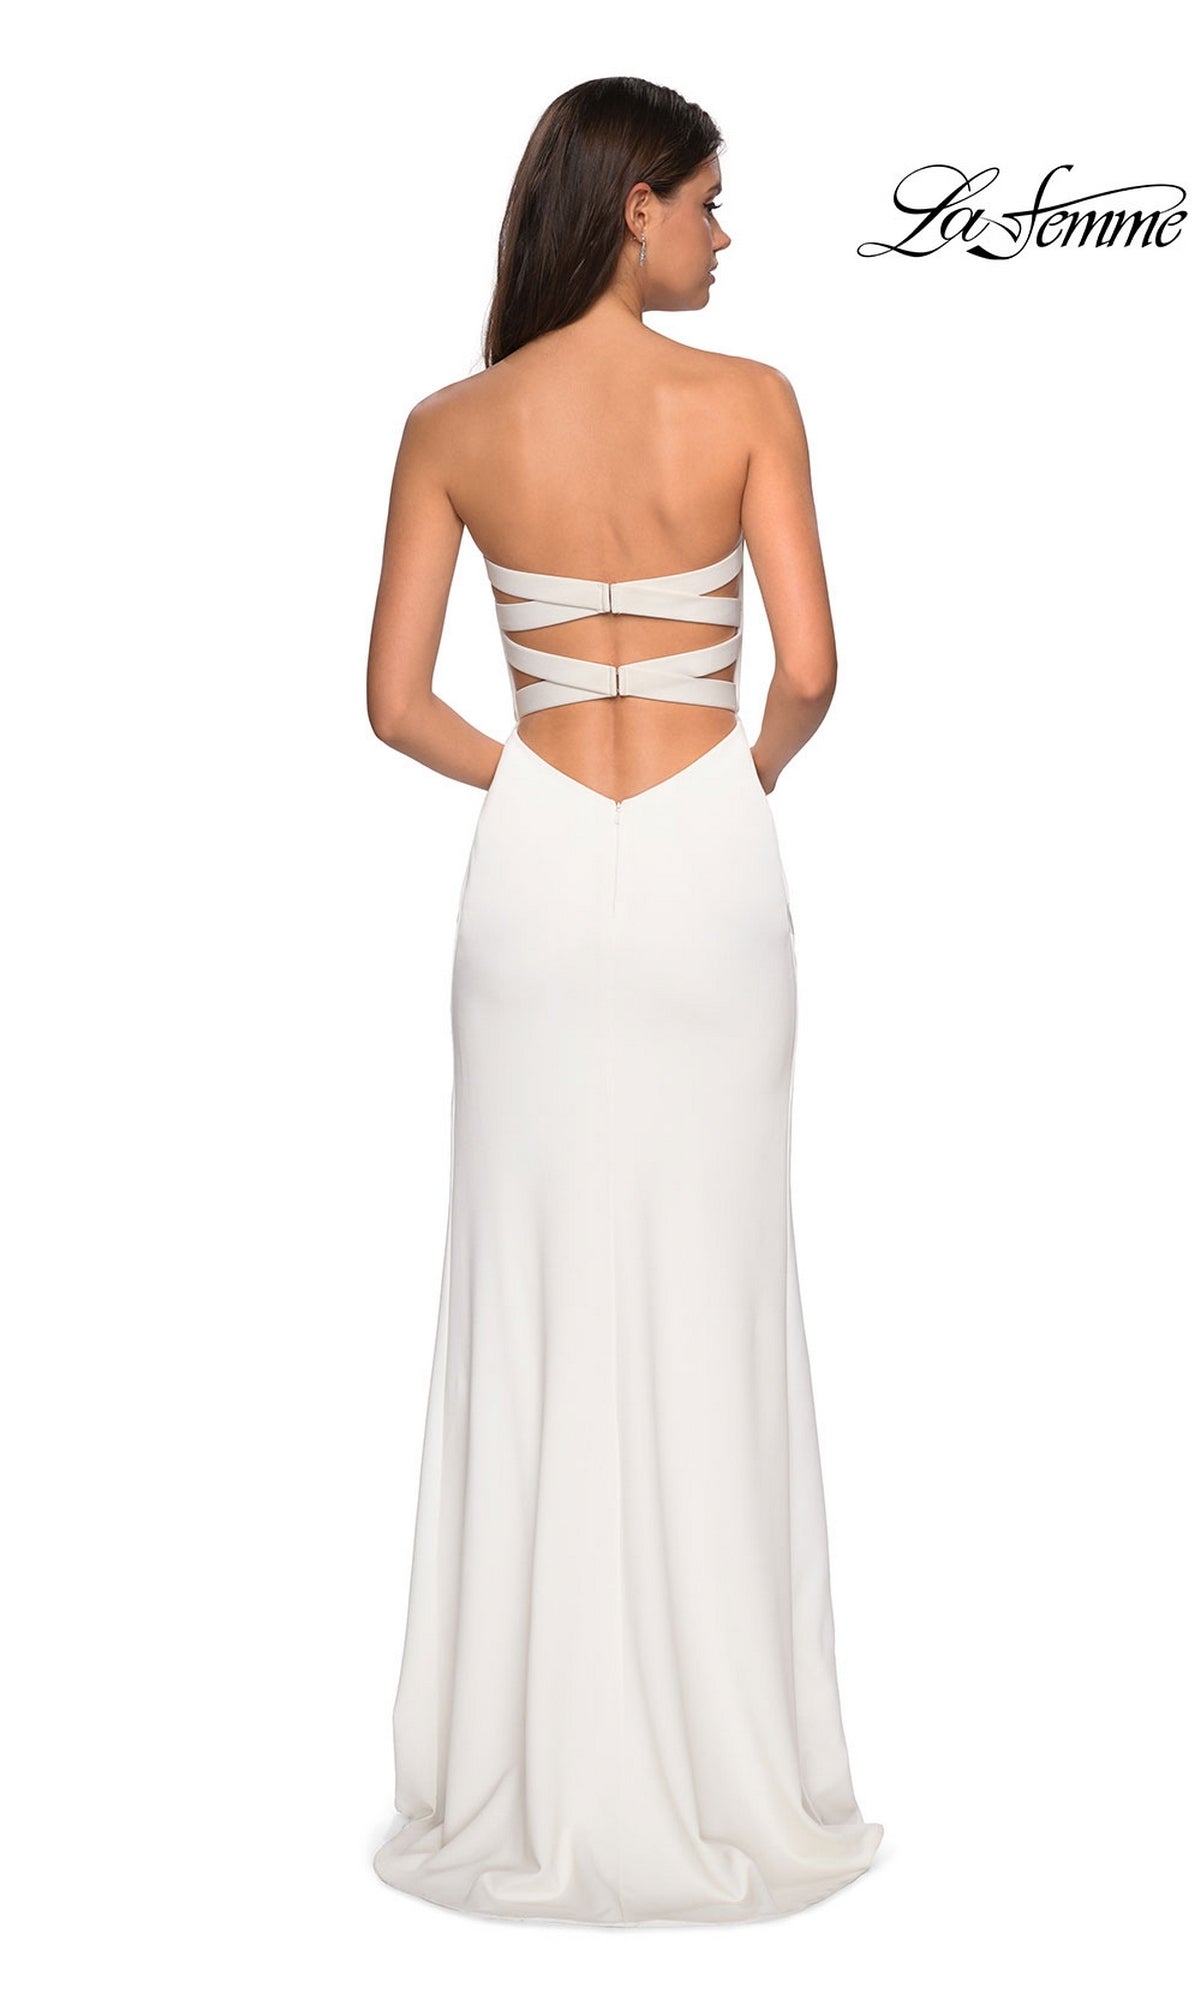 La Femmme Sleek Strapless Long Prom Dress 27035